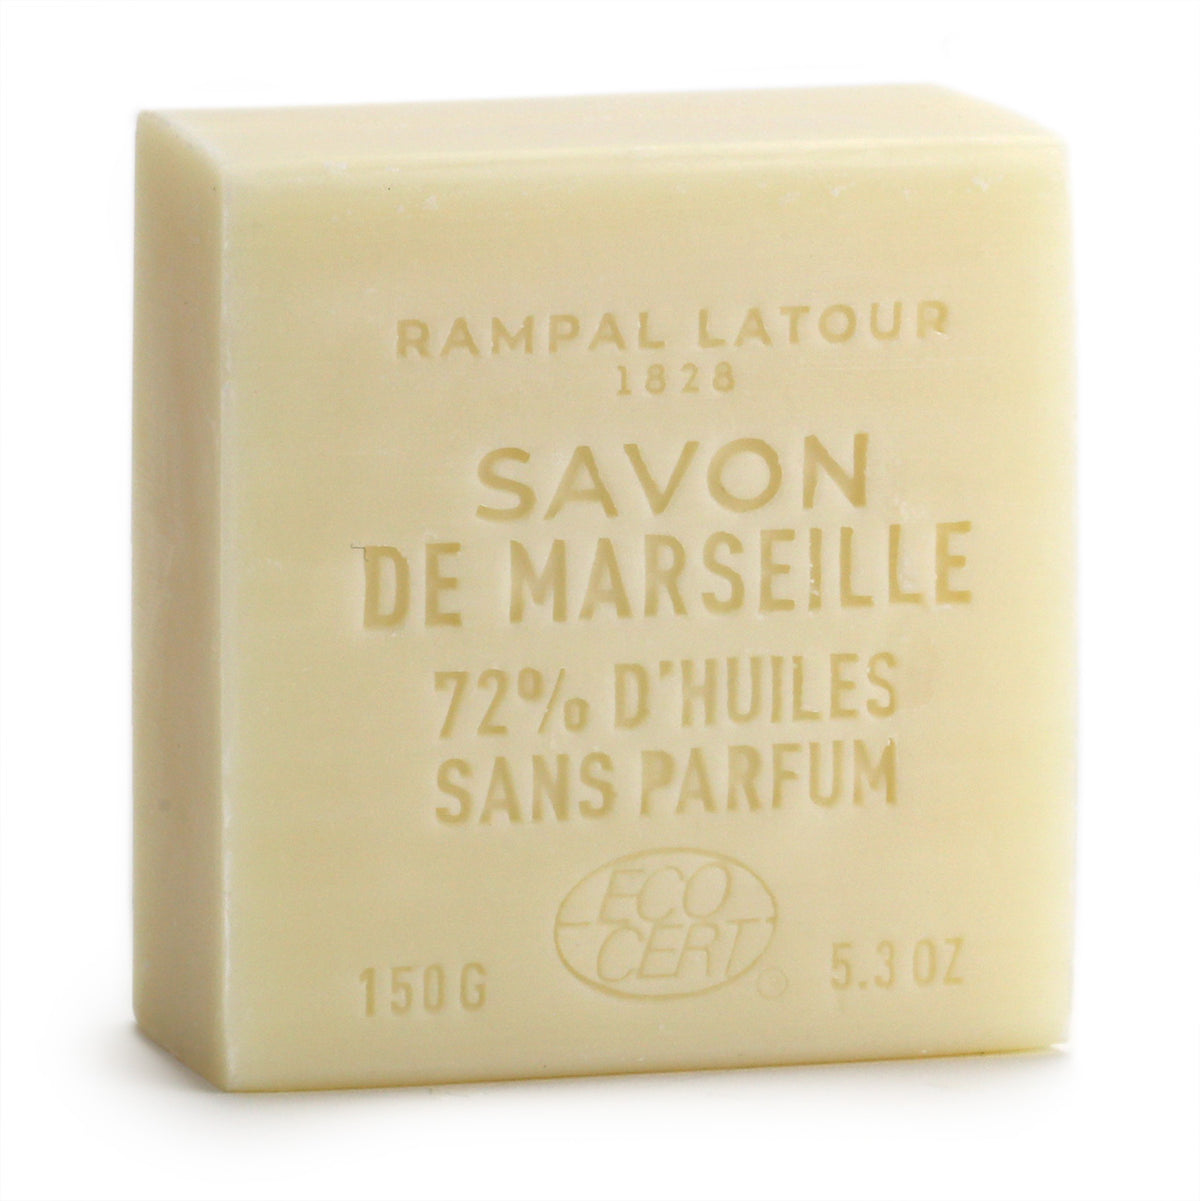 Rampal Latour 150g soap, back side of block says SAVON DE MARSEILLE - 72% D&#39;HUILES - SANS PARFUM - ECO-CERT.